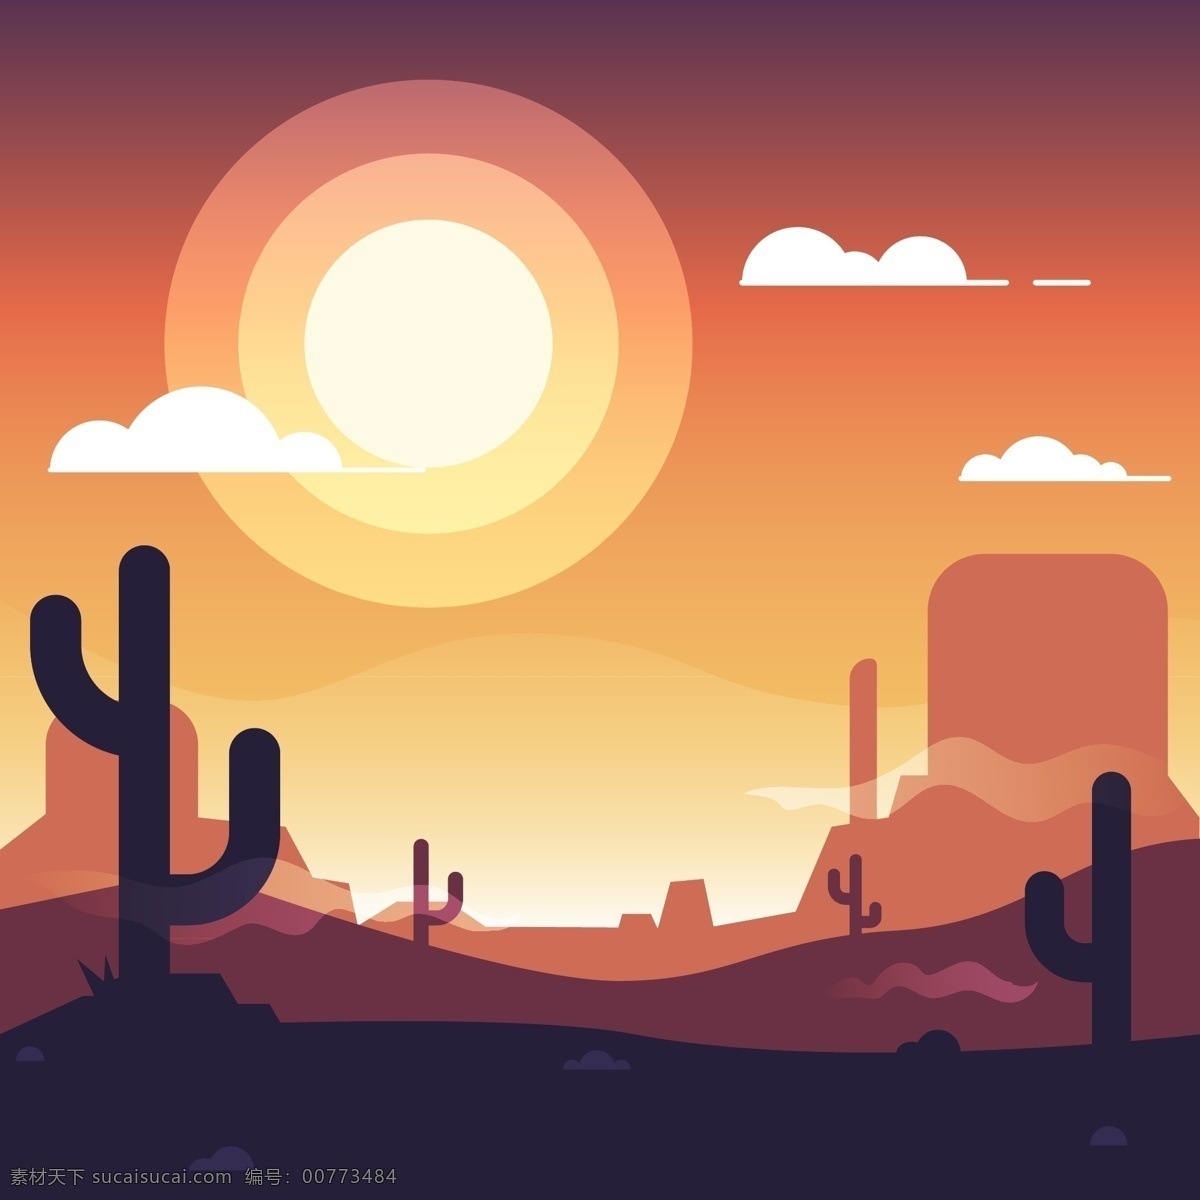 沙漠 傍晚 风景 图 矢量图 插画 平面设计